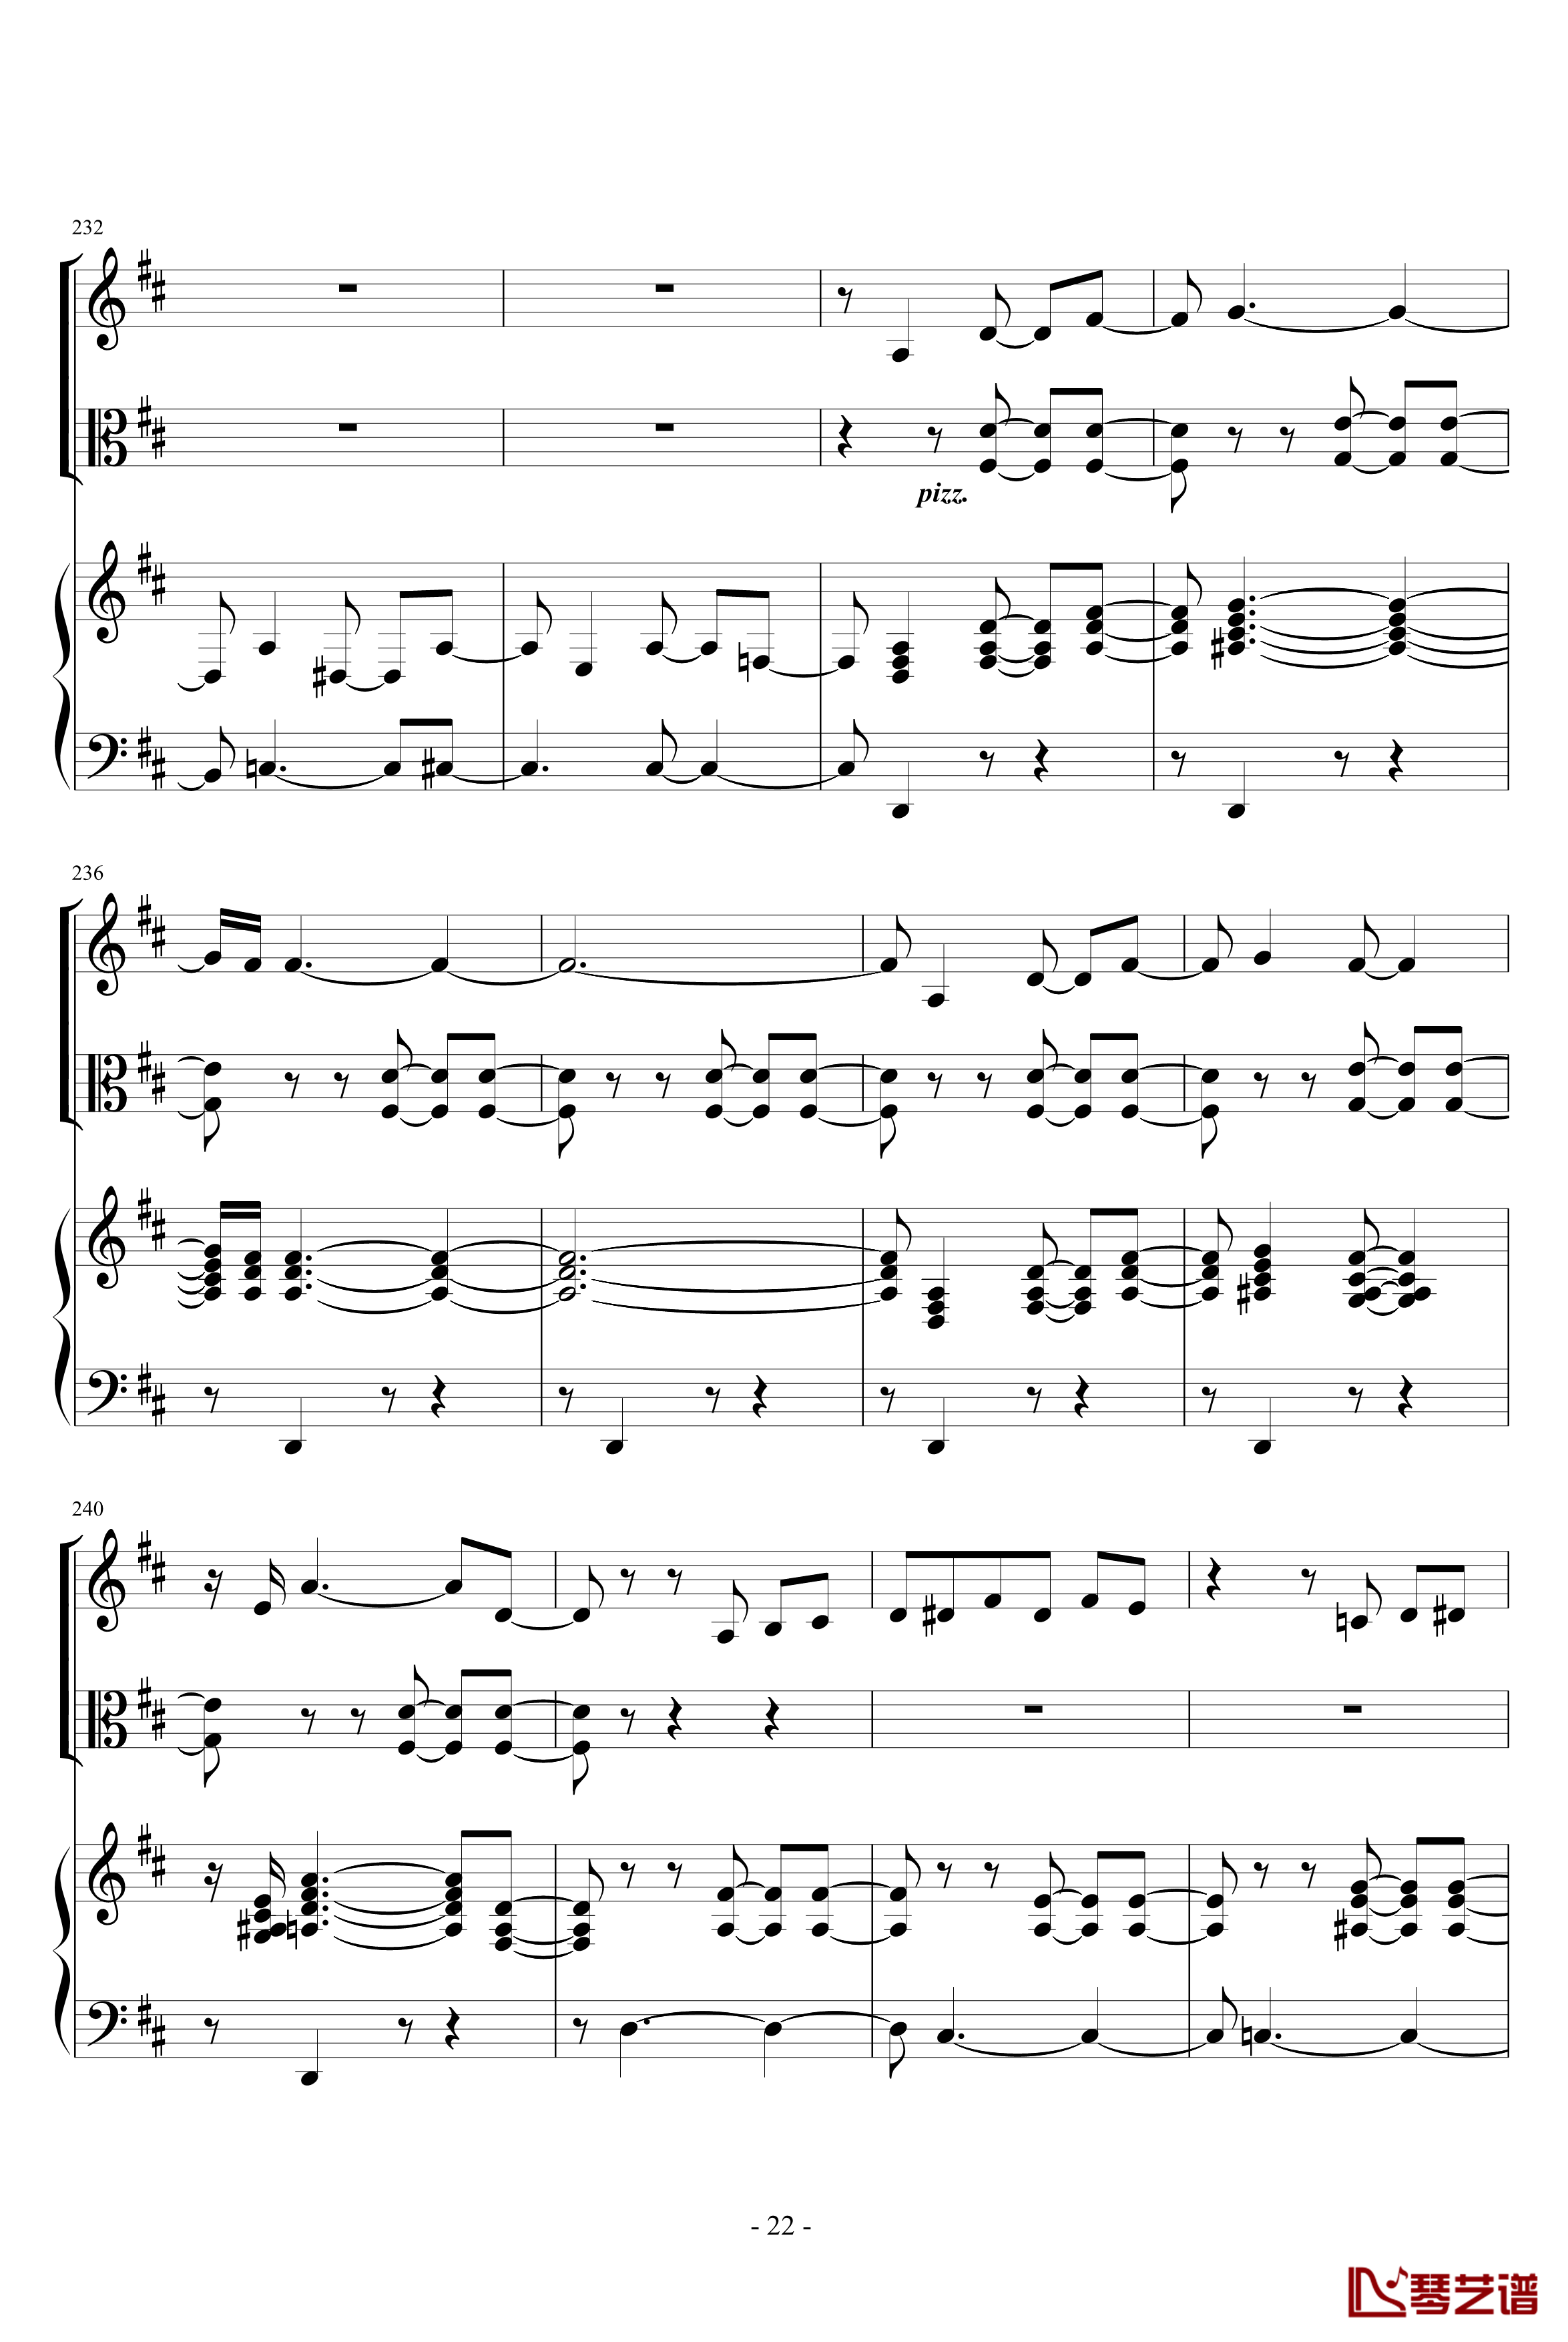 花之圆舞曲钢琴谱-柴科夫斯基-Peter Ilyich Tchaikovsky22